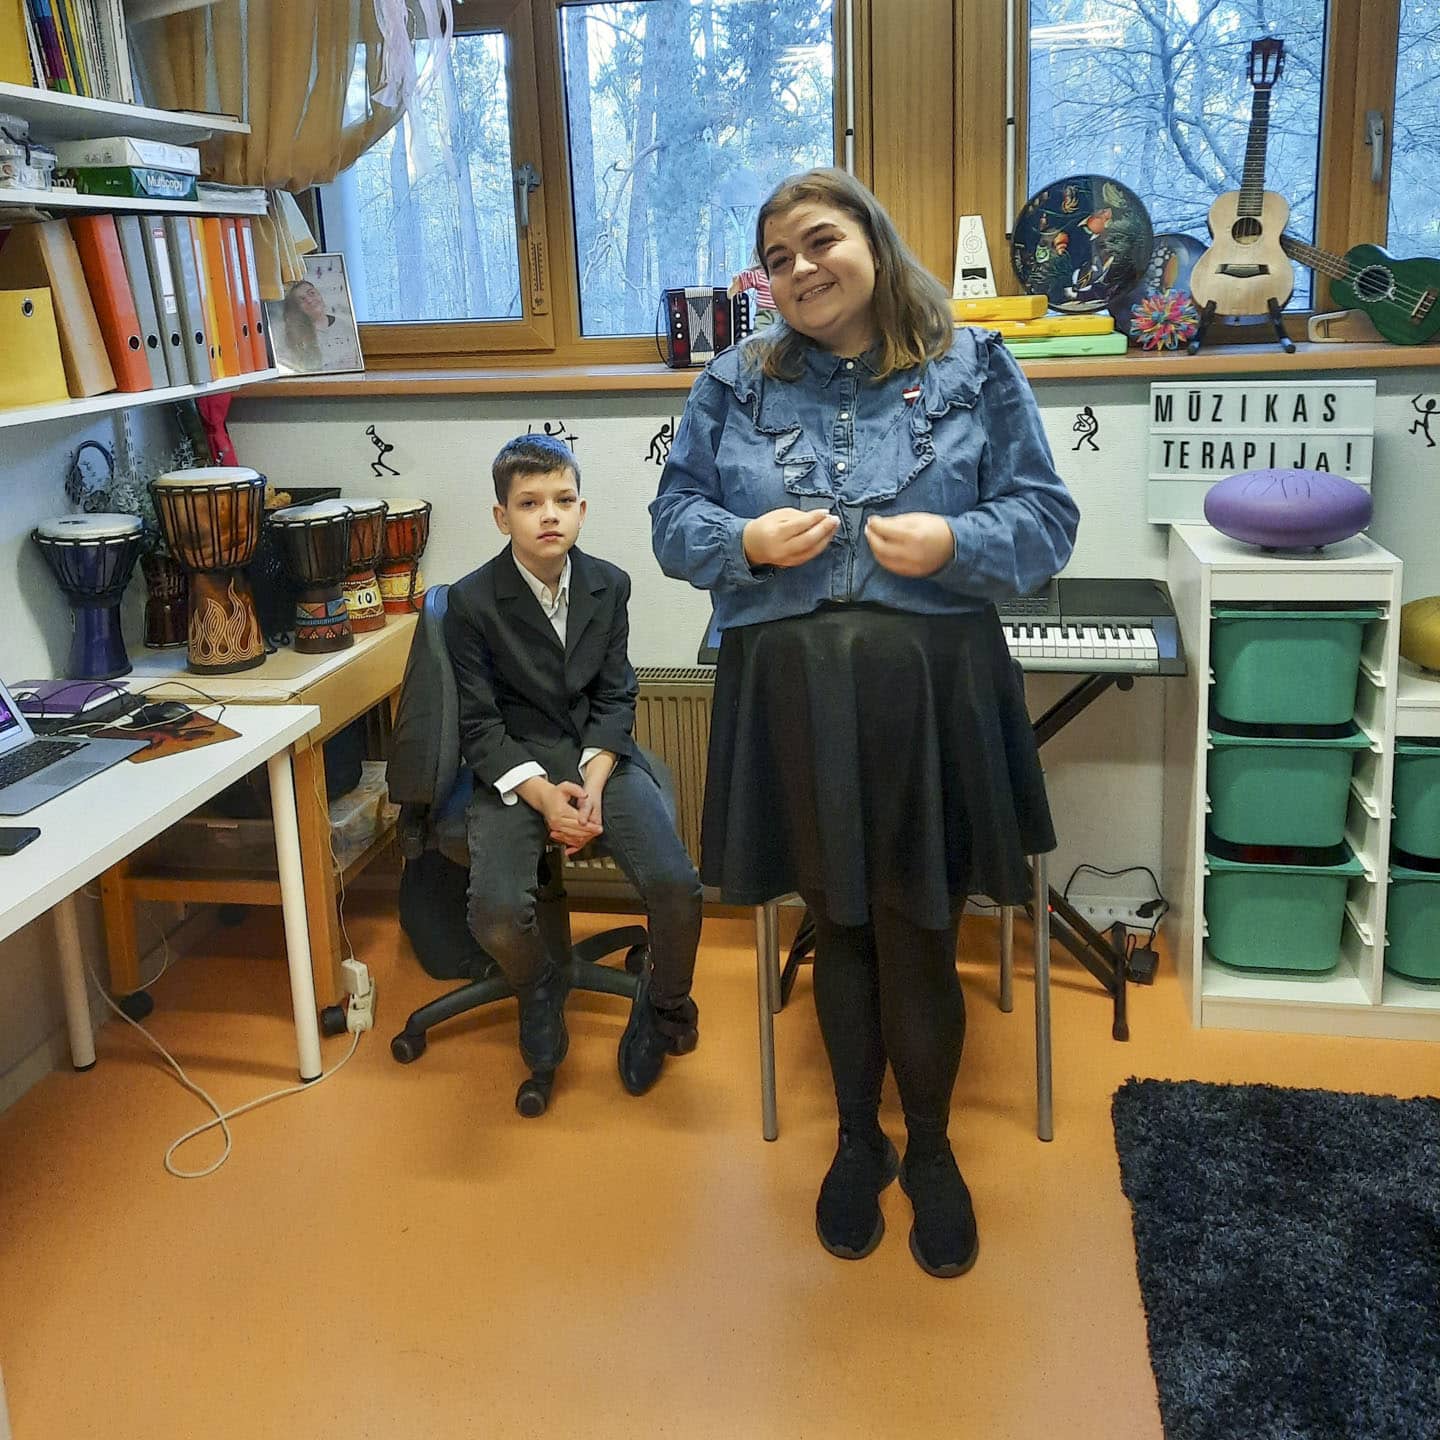 Lärarinna och elev i musikrum i Lettland.